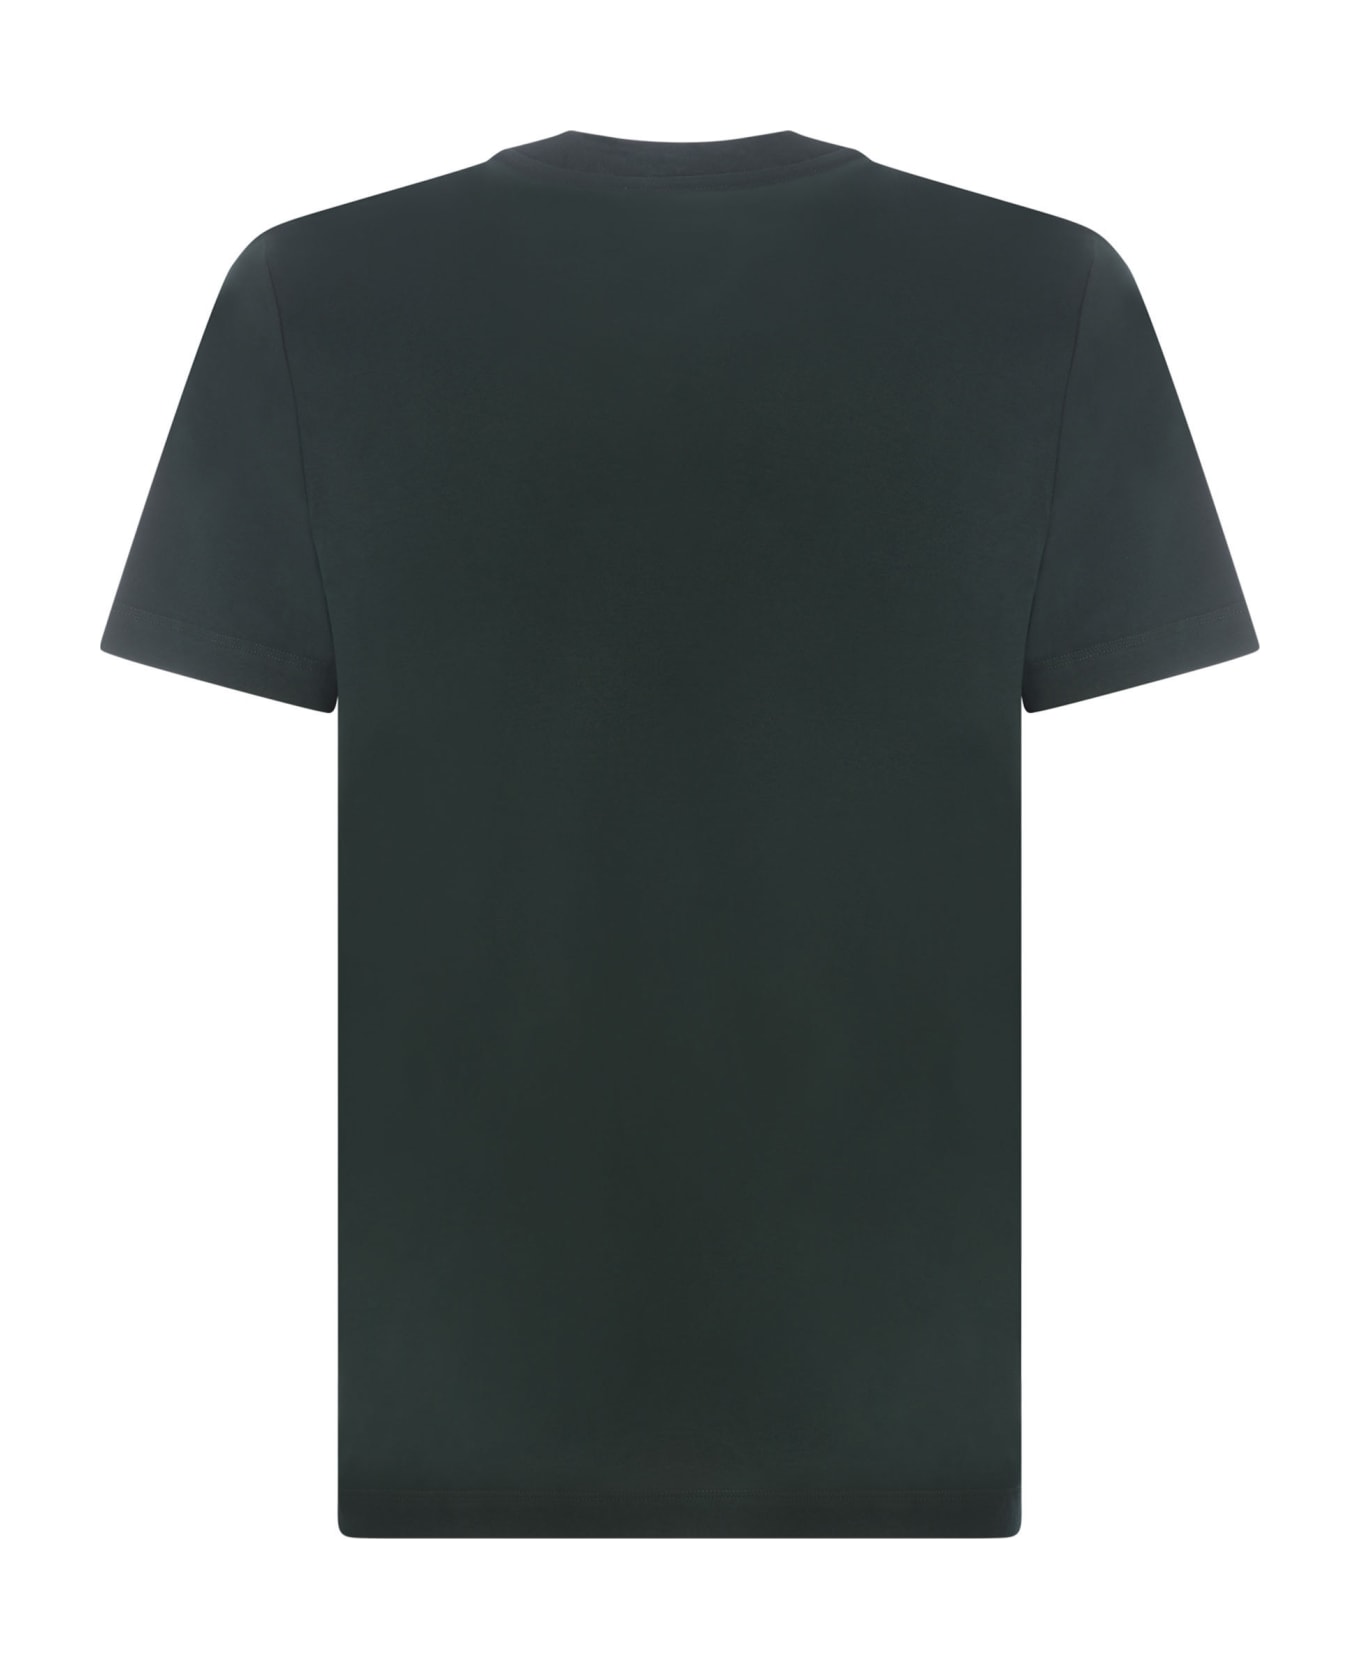 Marni T-shirt Marni In Cotton - Verde scuro